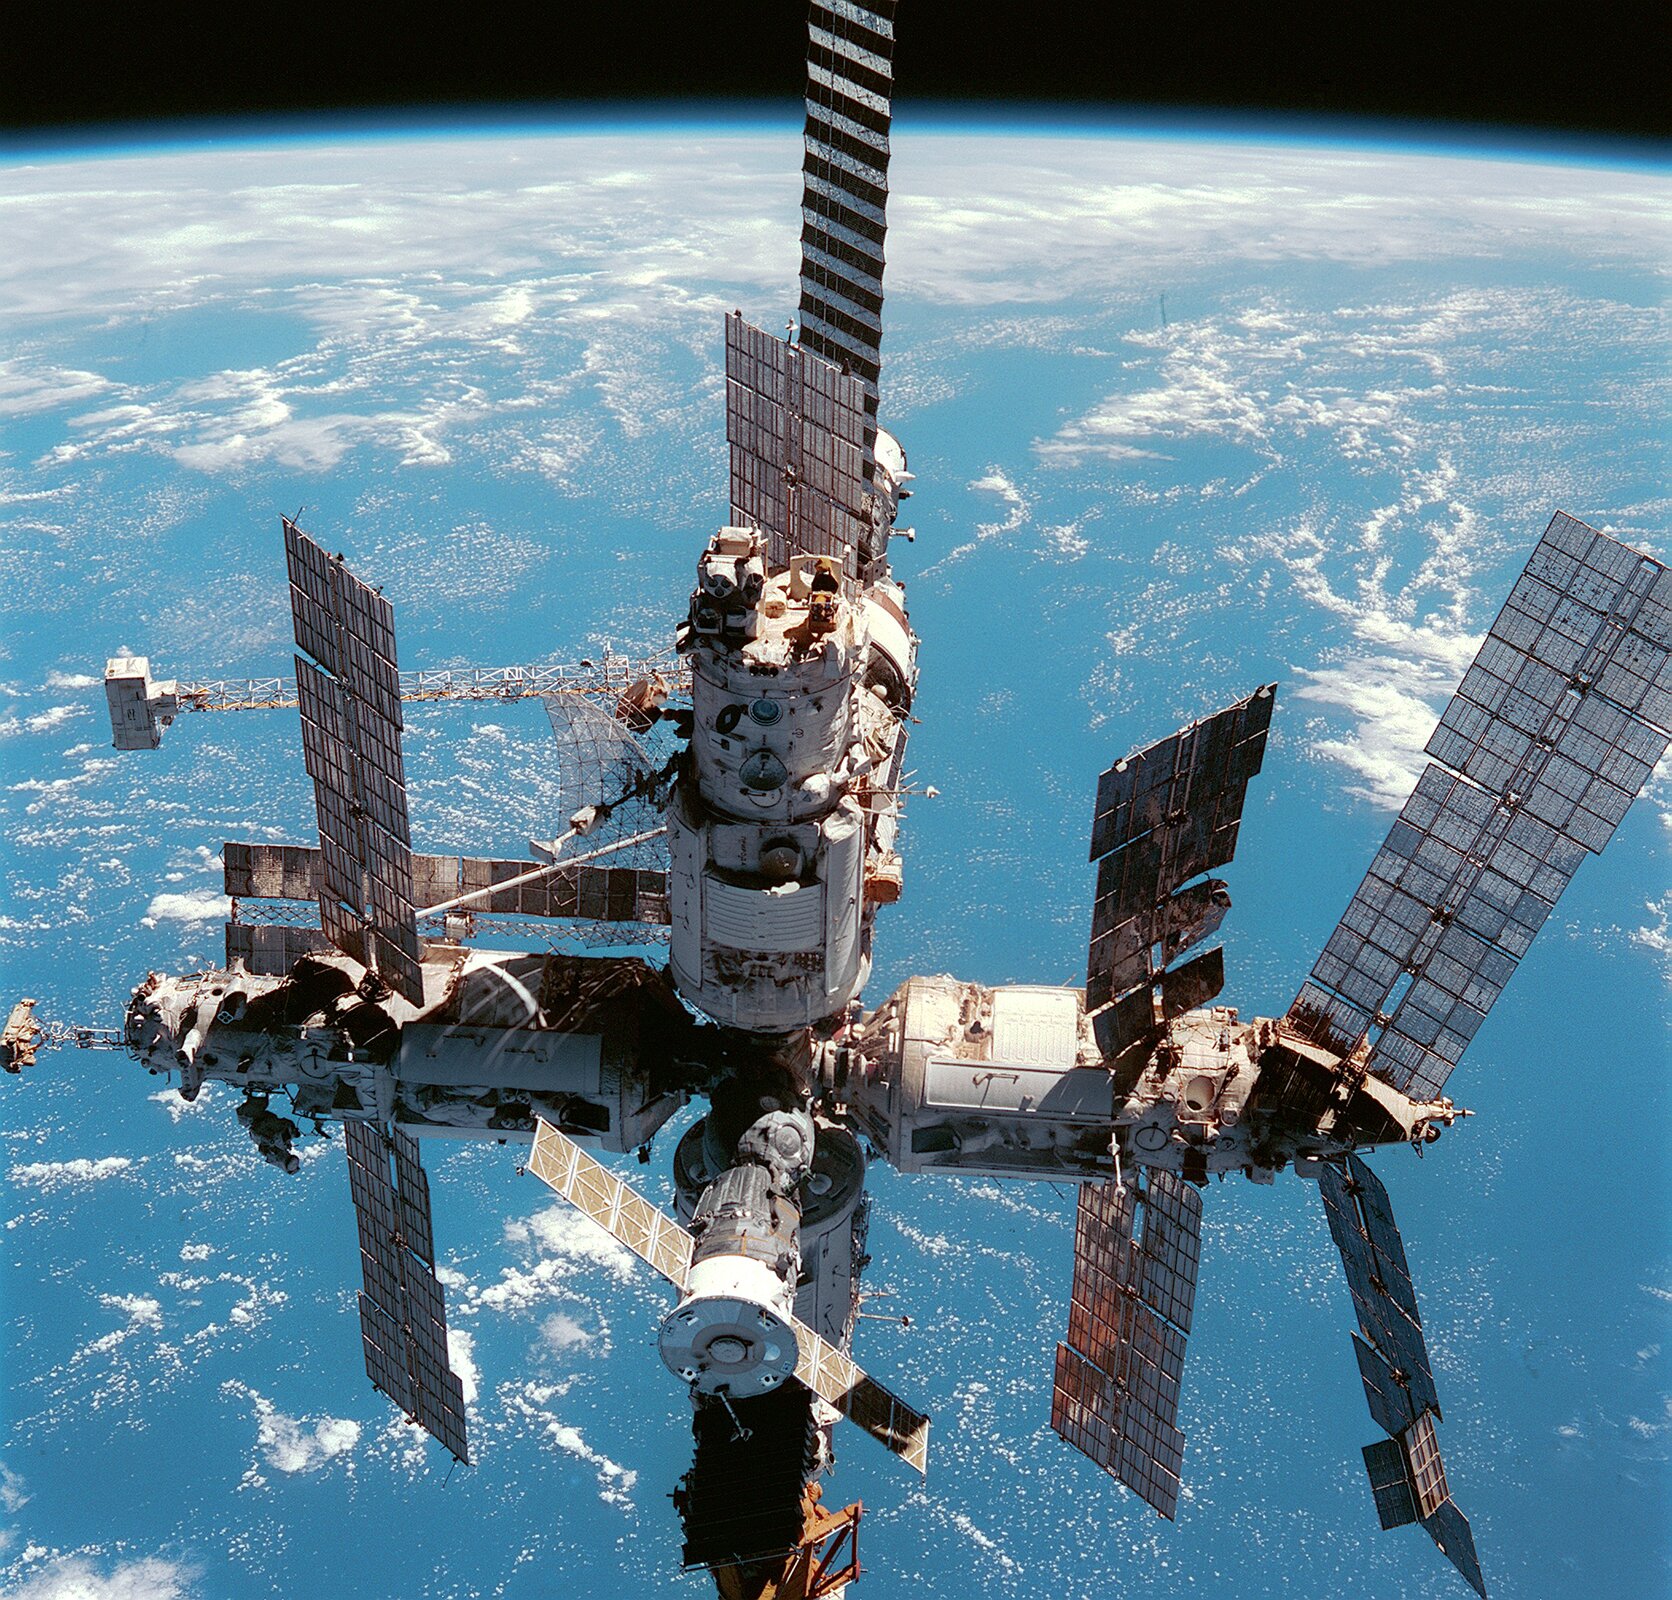 Zdjęcie przedstawia stację kosmiczną Mir na orbicie. Na pierwszym planie widoczna stacja kosmiczna, w tle fragment kuli ziemskiej. Stacja składa się ze skomplikowanych modułów oraz kilku podłużnych paneli słonecznych.